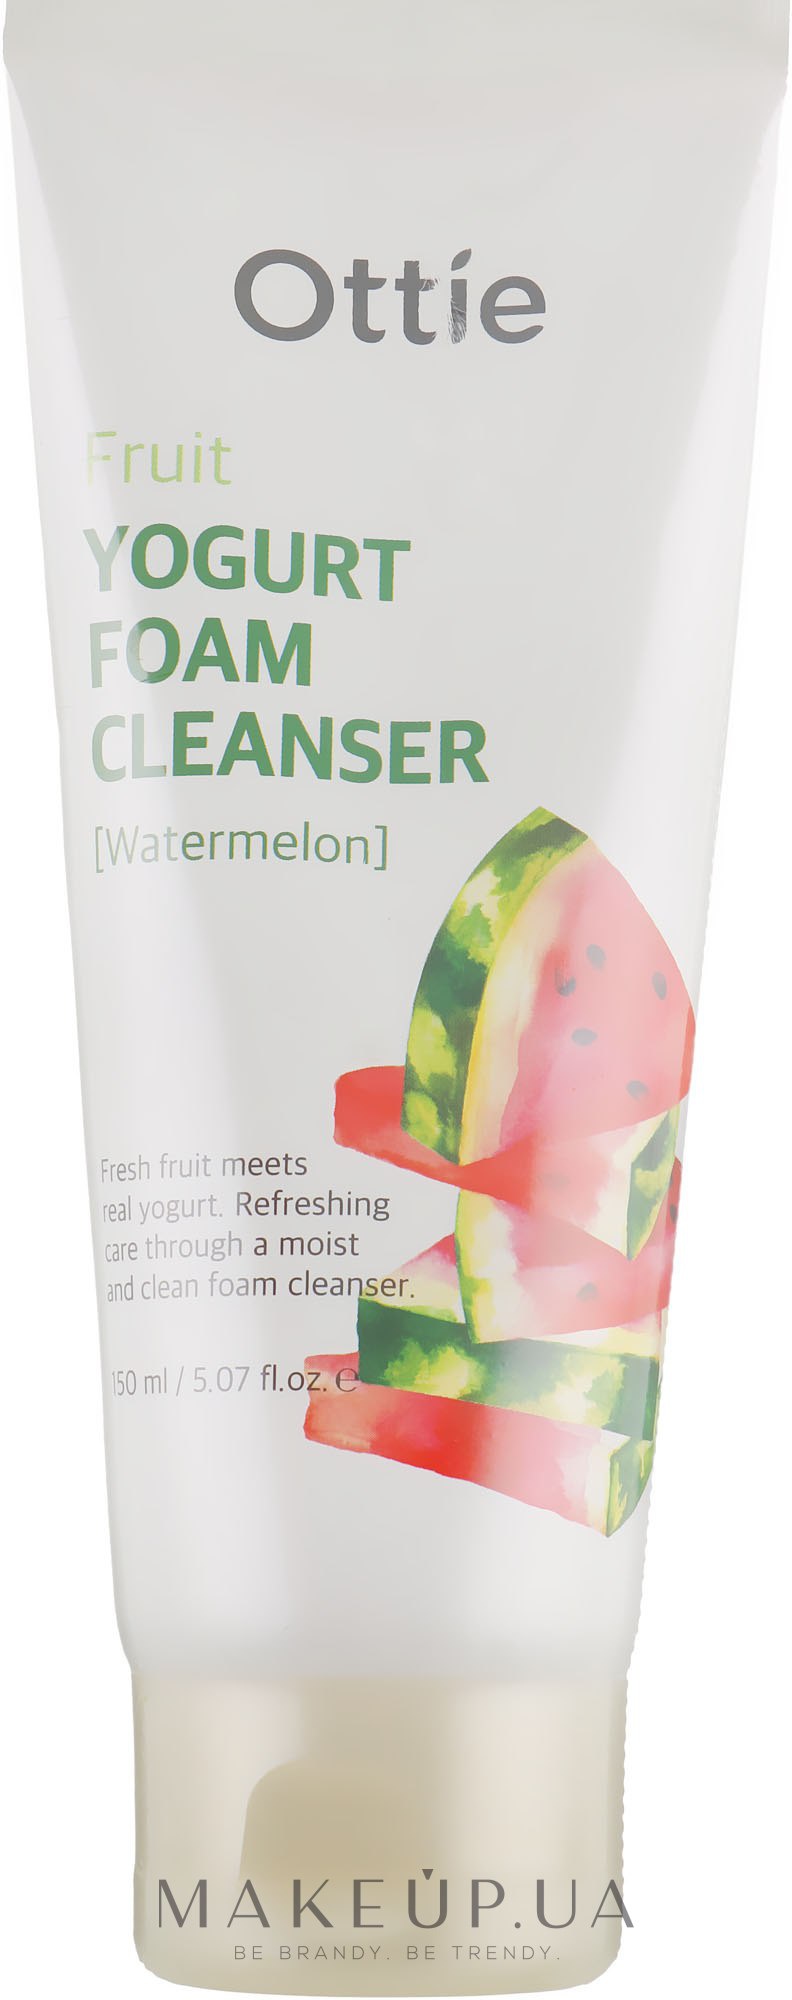 Ottie Fruits Yogurt Foam Cleanser Watermelon